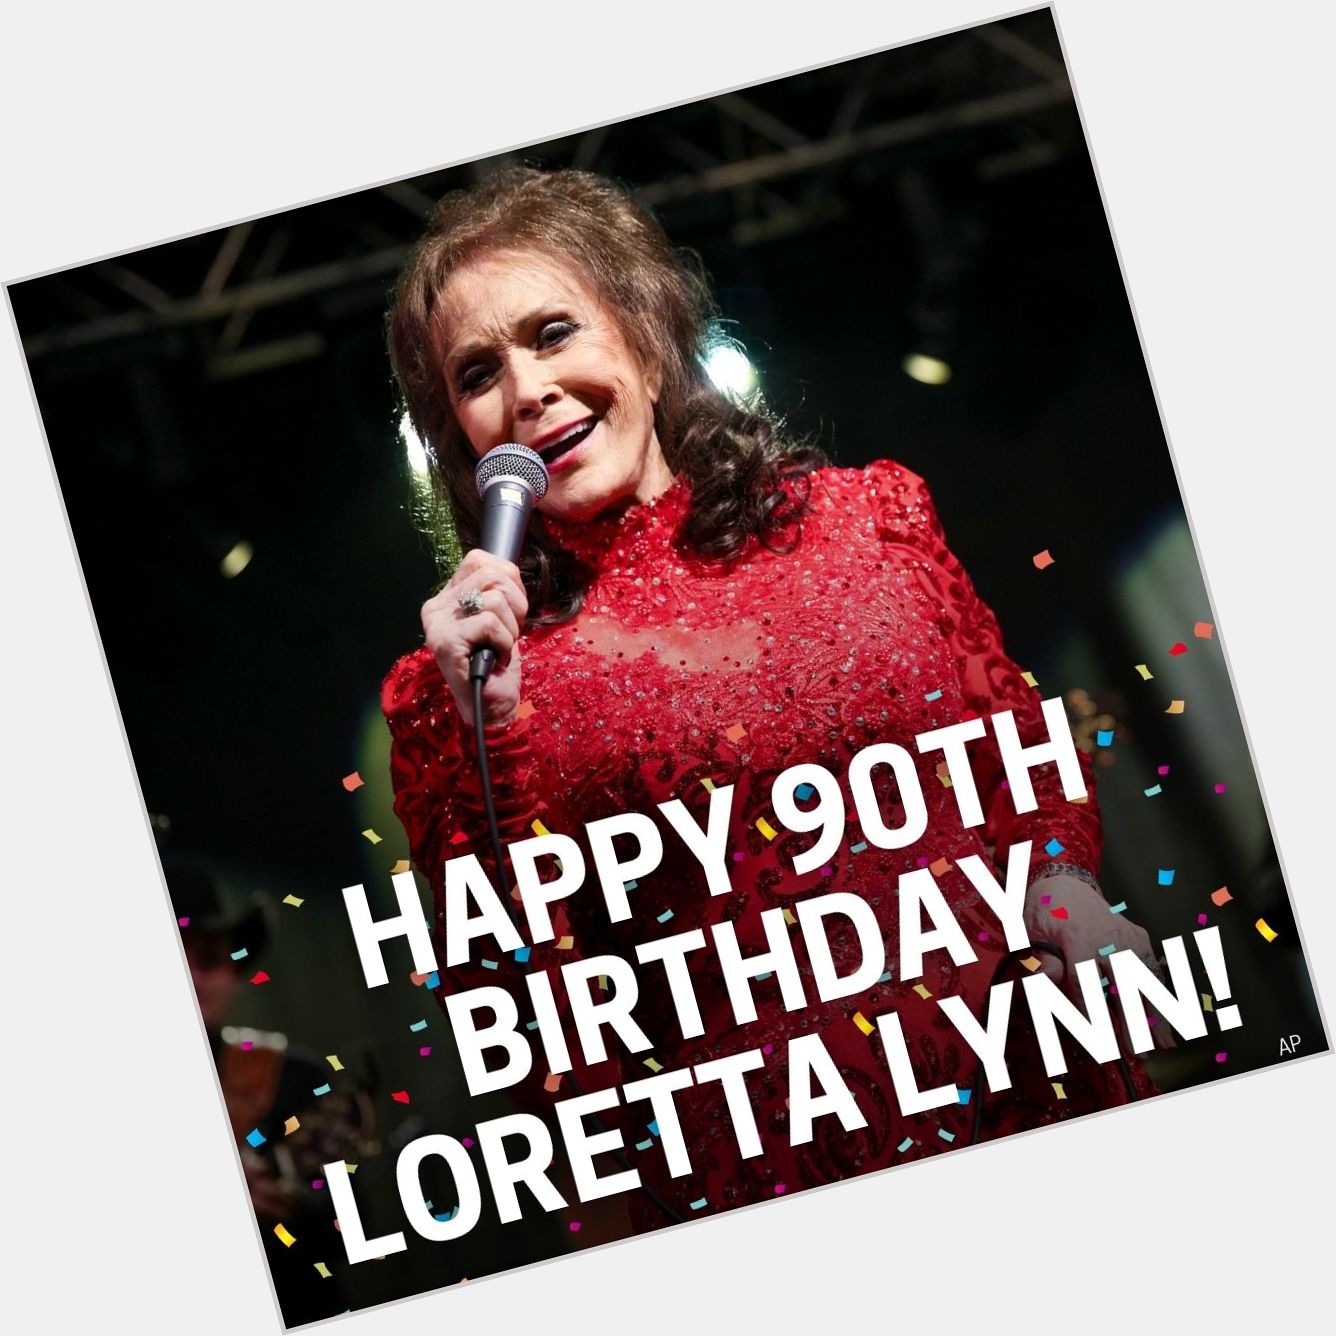 Happy Birthday Loretta Lynn! 